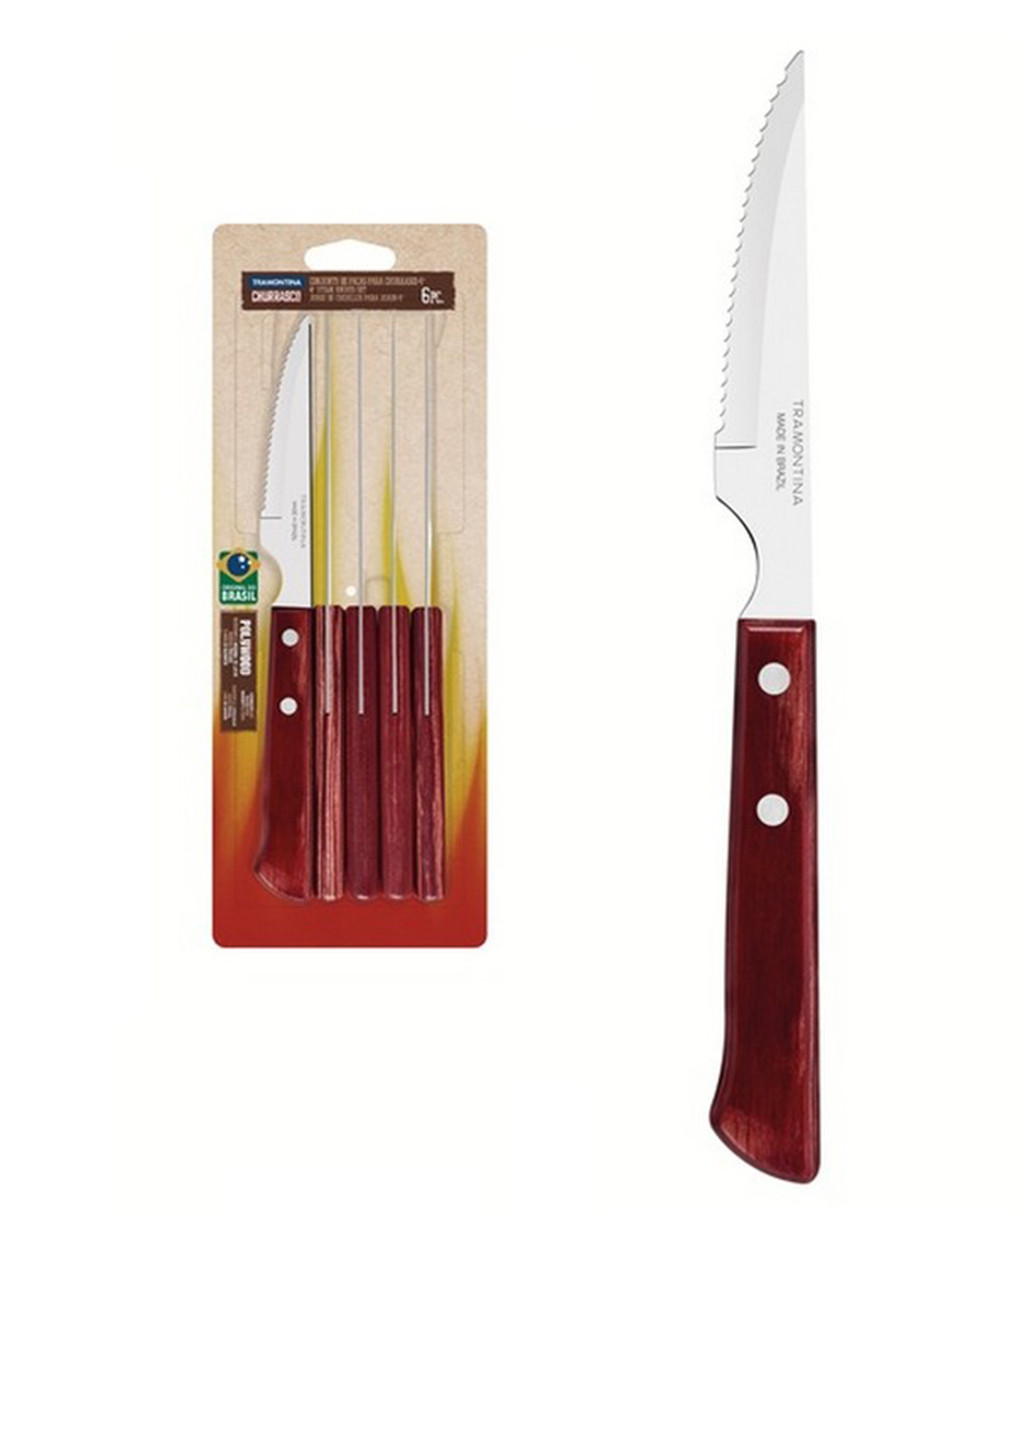 Набор ножей для стейка (6 шт,) Tramontina комбинированные, нержавеющая сталь, древесина